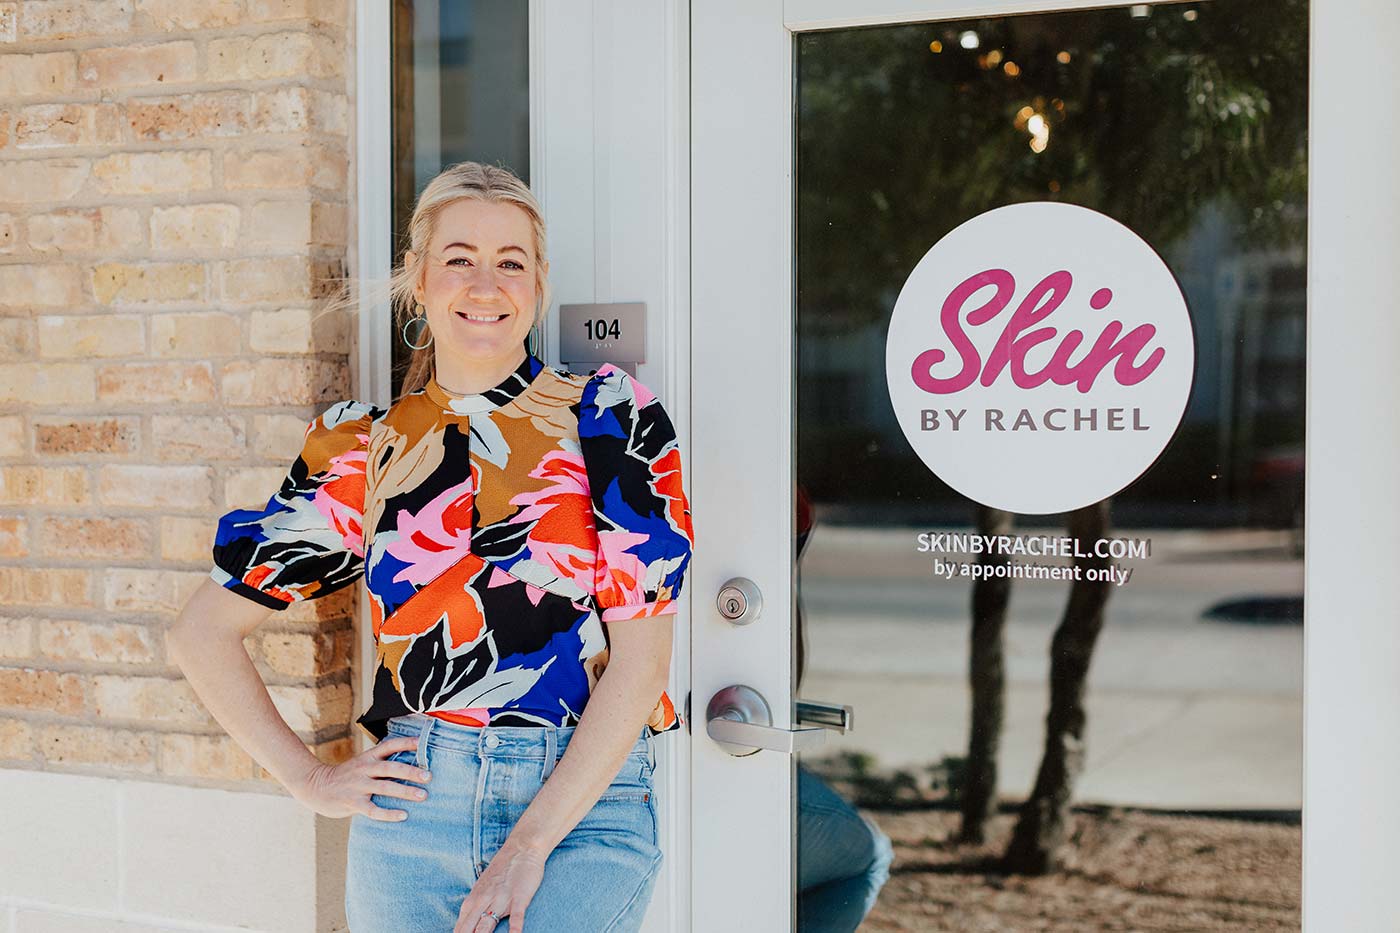 Rachel Spillman owner of Skin by Rachel standing outside her store entrance